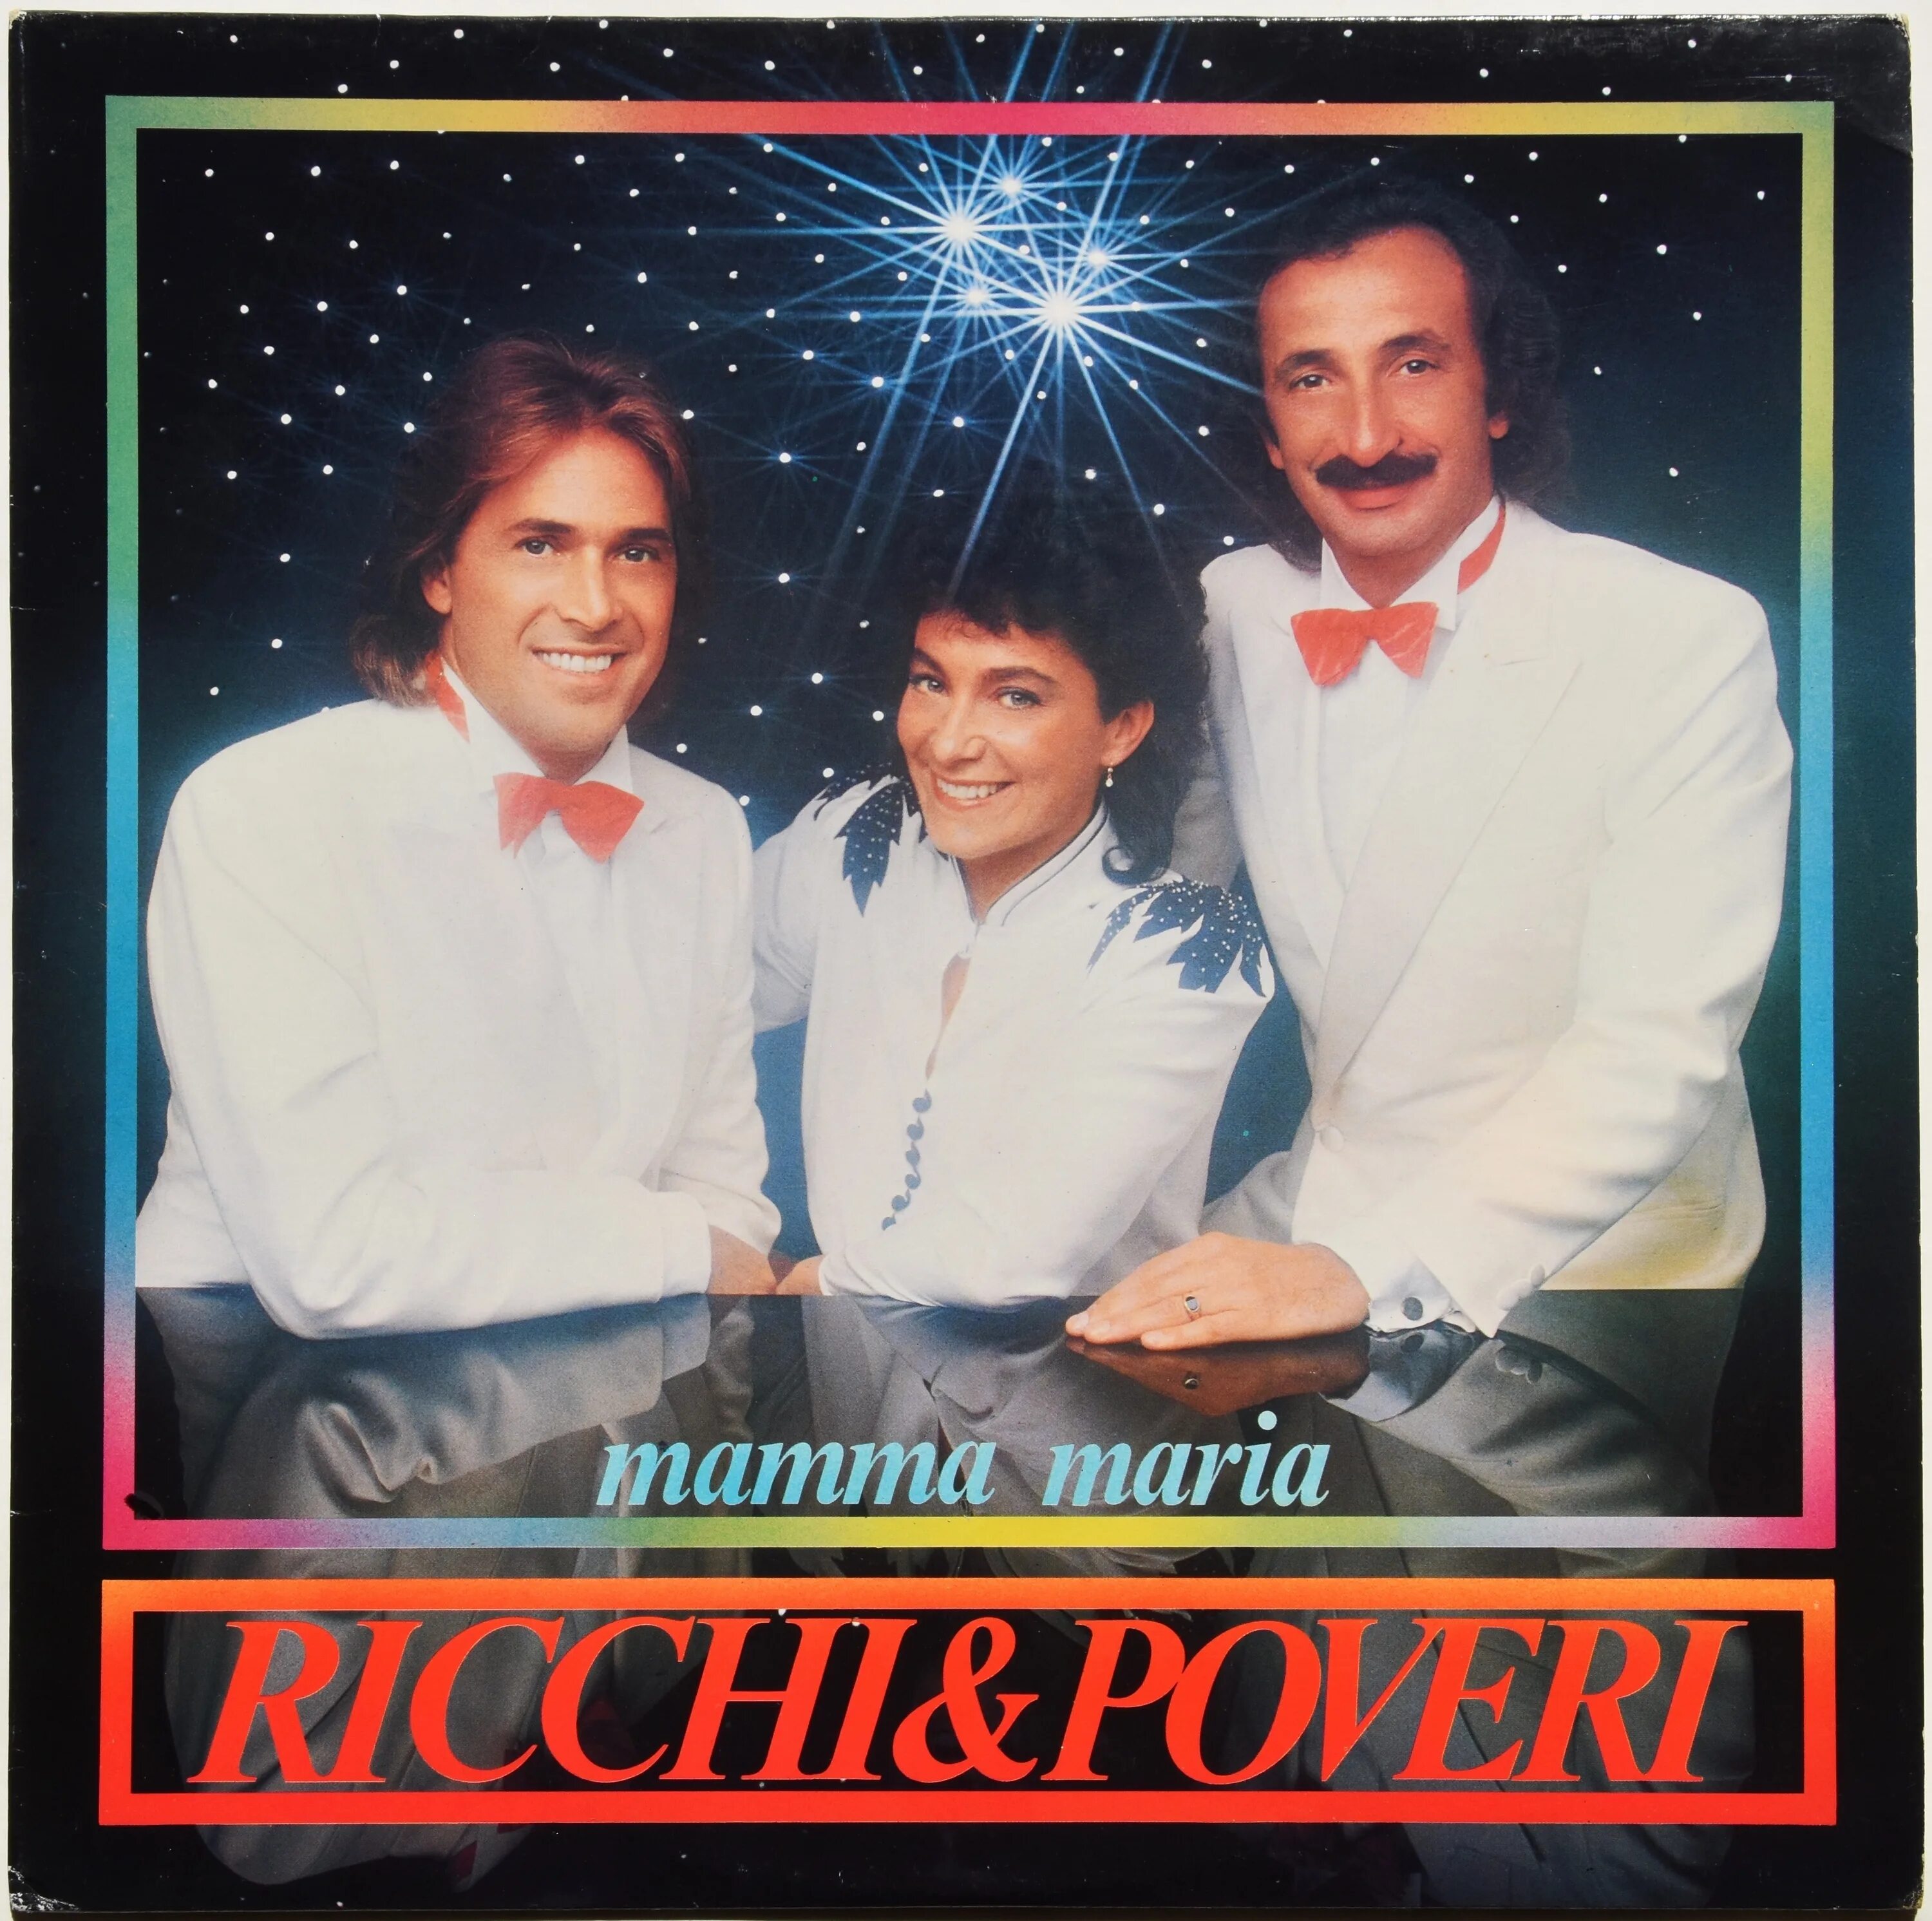 Ricchi poveri mamma maria. 1982 — Mamma Maria. Обложка трека Ricchi e Poveri mamma Maria. Ricchi e Poveri - mama Maria альбом. Альбом Рики е повери 1983 года.